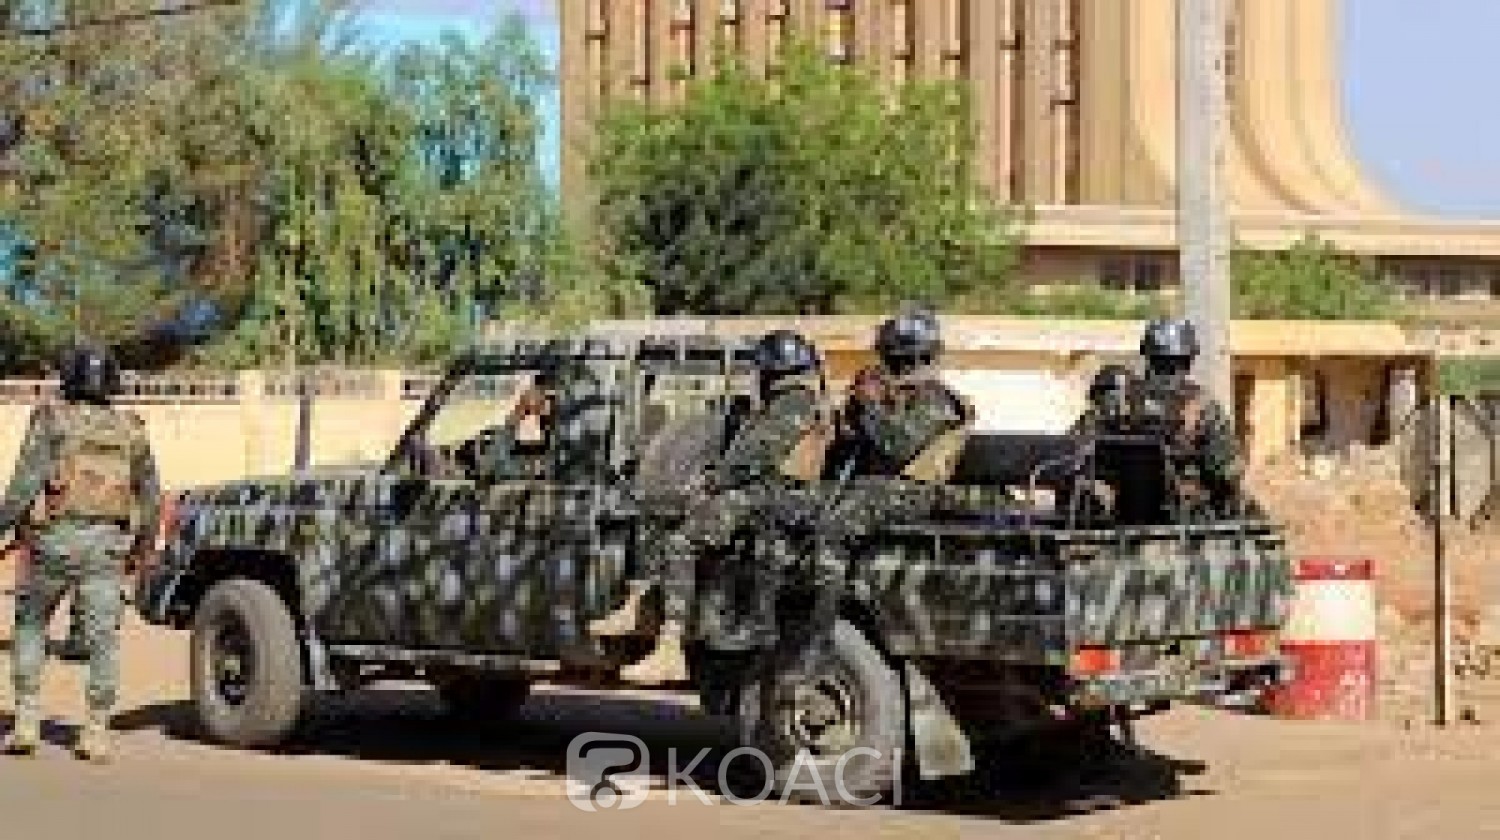 Niger : Tirs à l'arme lourde entendus cette nuit aux alentours de la présidence à Niamey